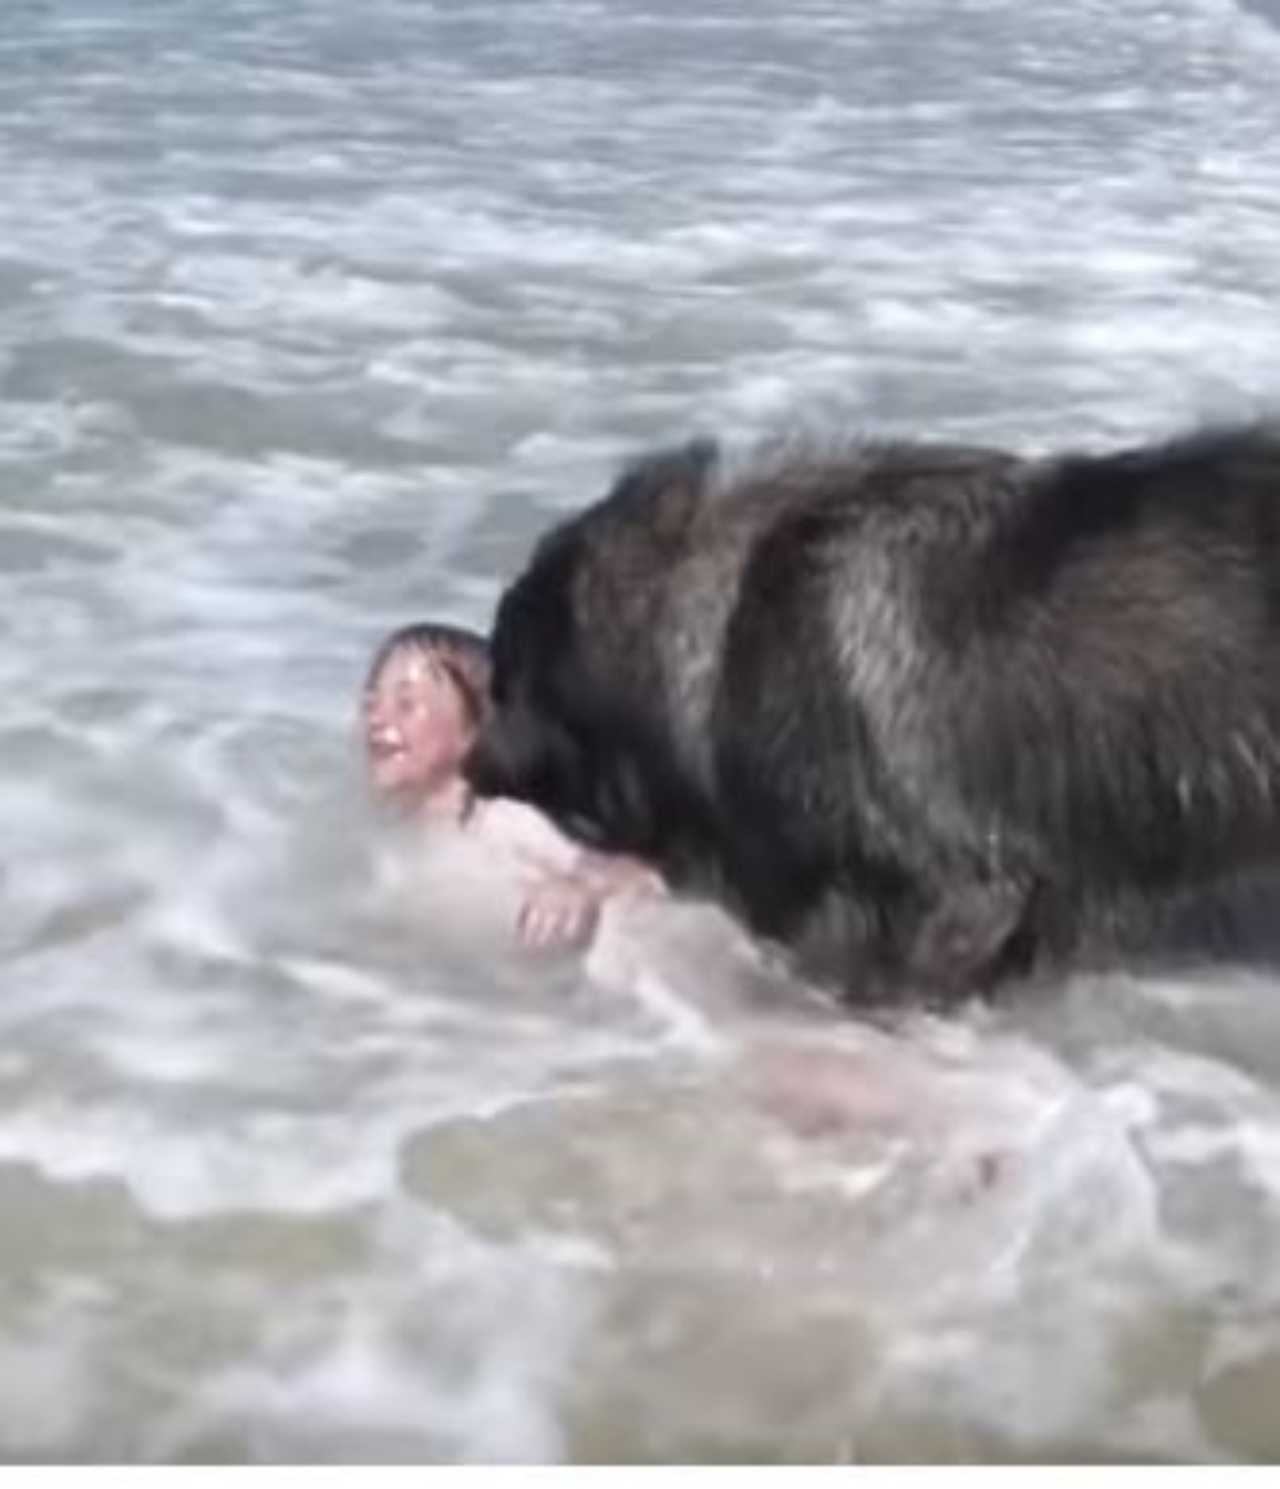 Un cane di razza Terranova in acqua insieme ad una bambina